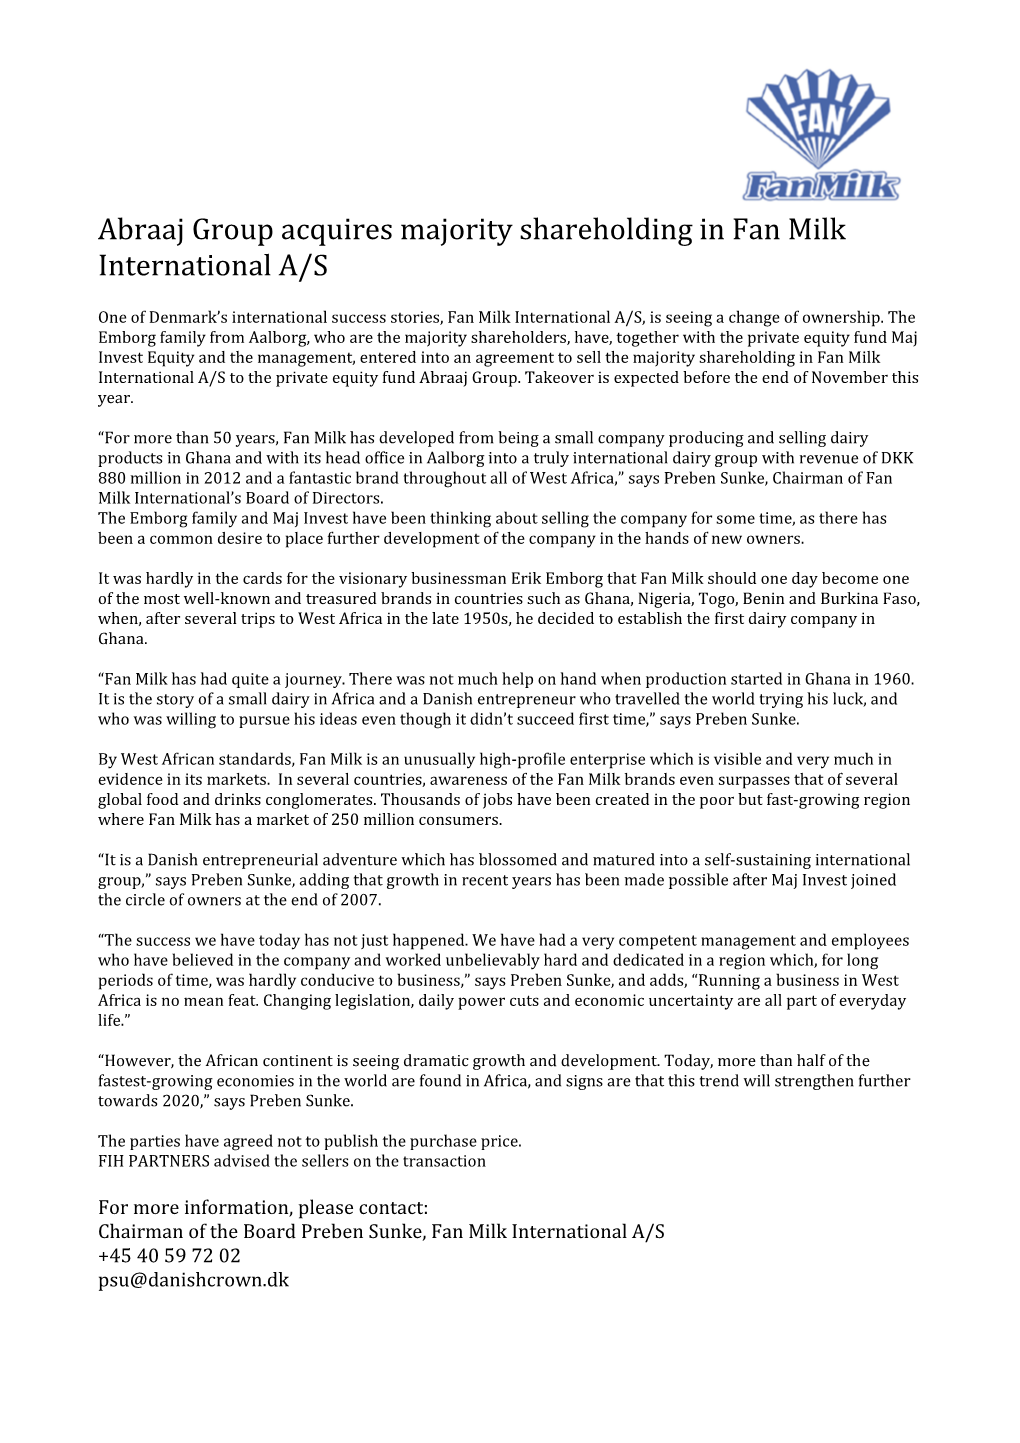 Abraaj Group Acquires Majority Shareholding in Fan Milk International A/S